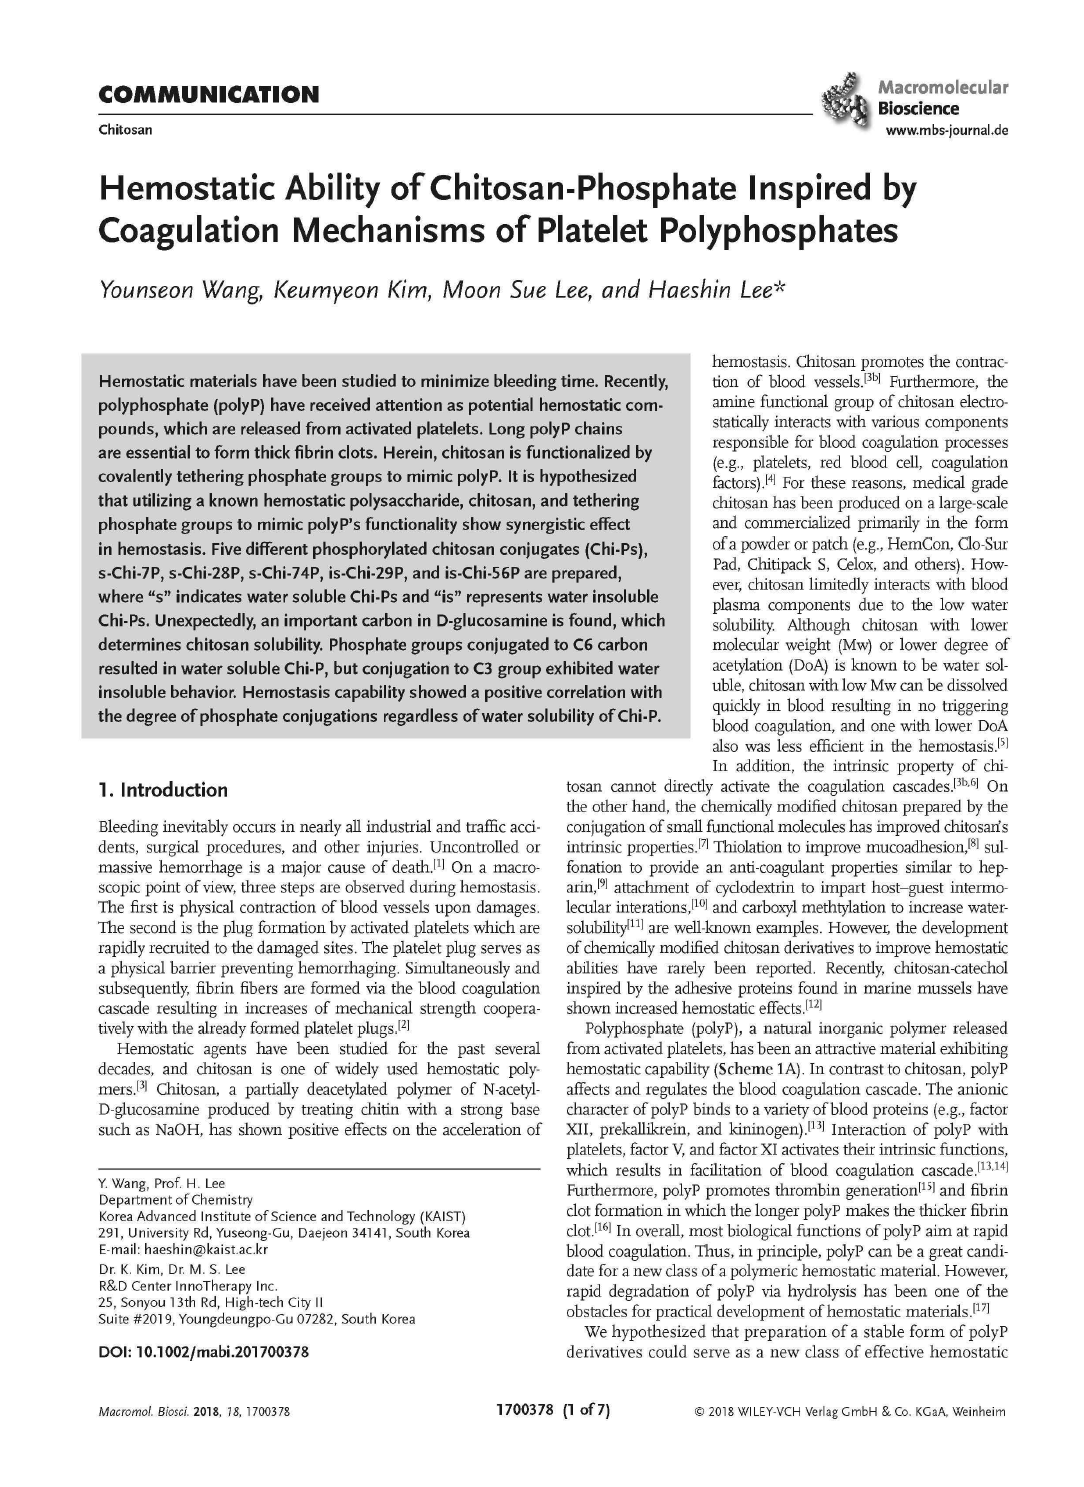 논문1. Hemostatic ability of chitosan-phosphate inspired by coagulation mechanisms of platelet polyphosphate